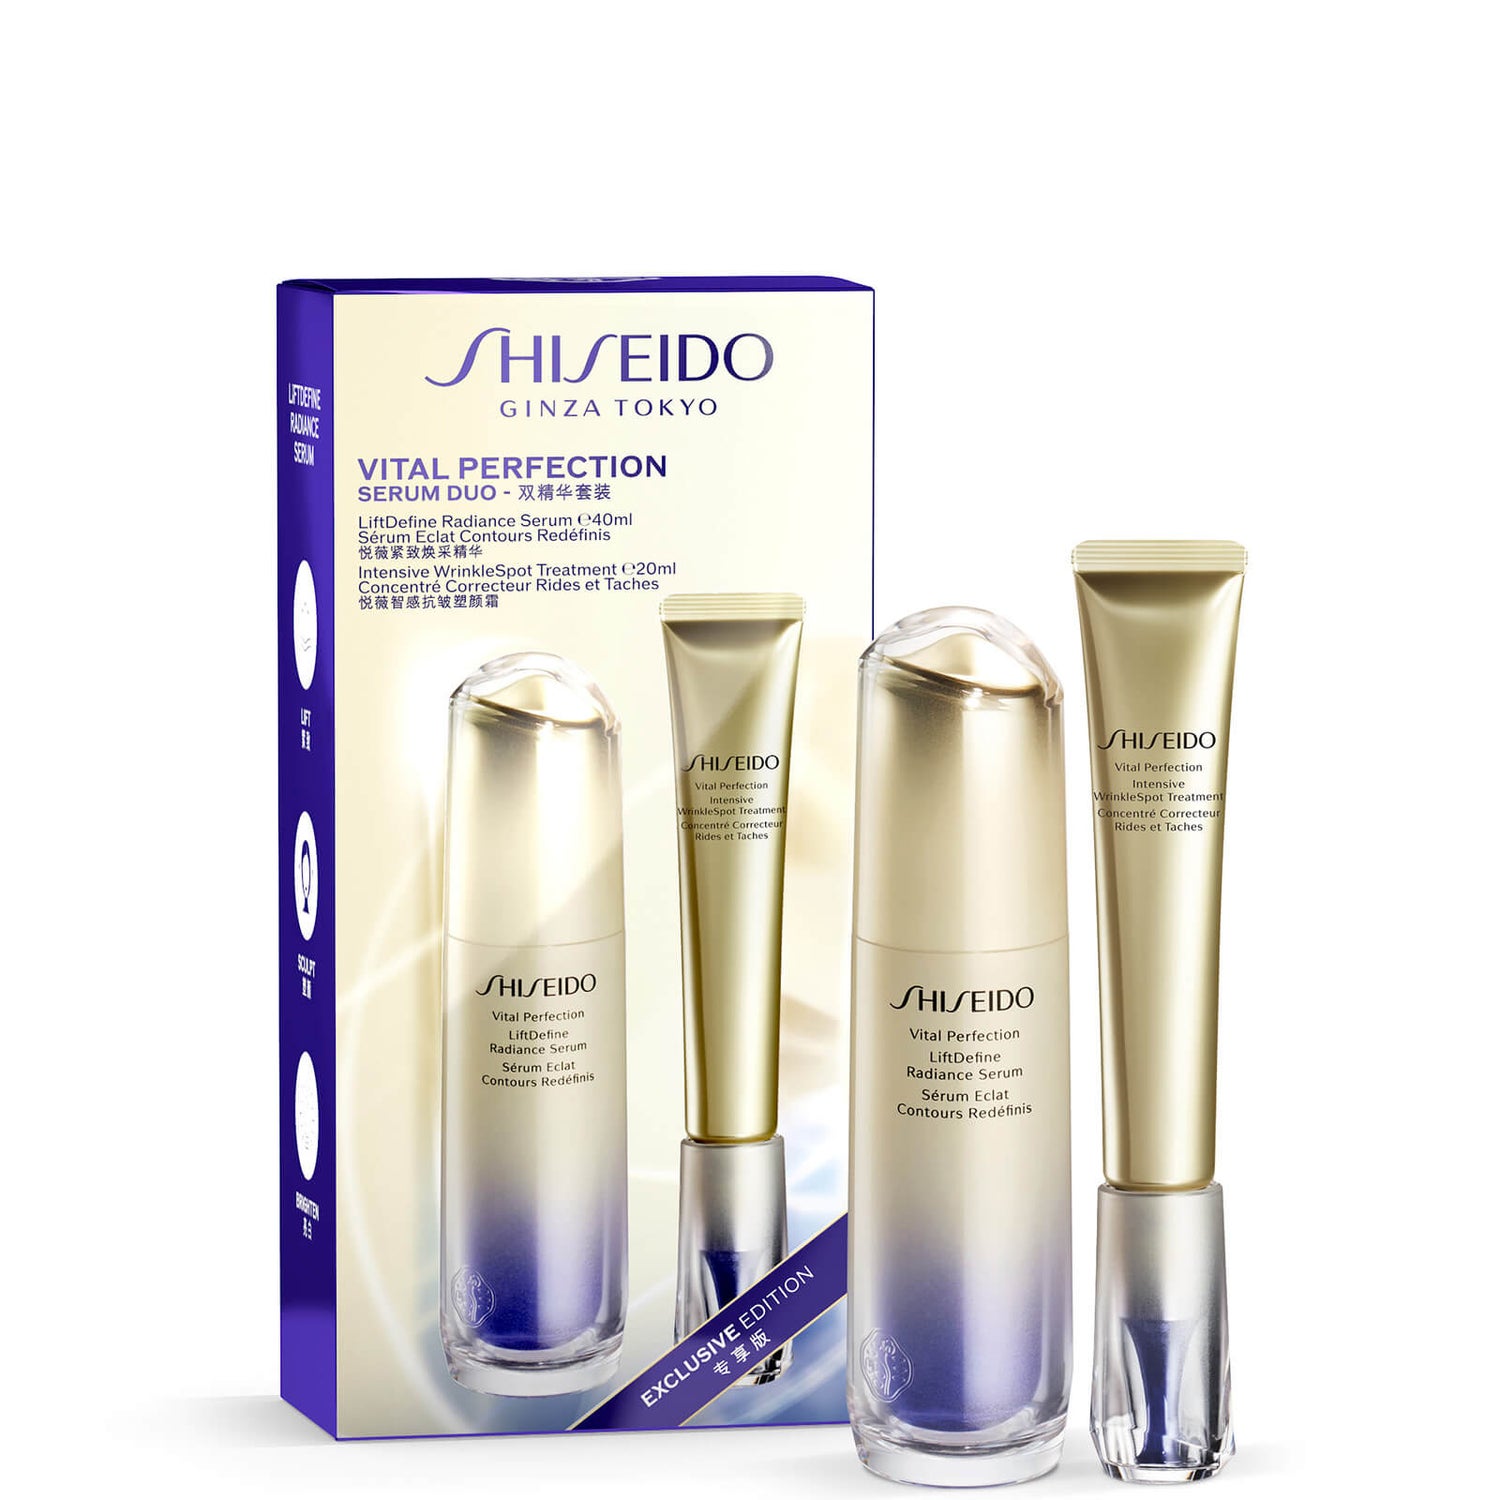 Shiseidon eksklusiivinen Vital Perfection Bestseller Set -setti